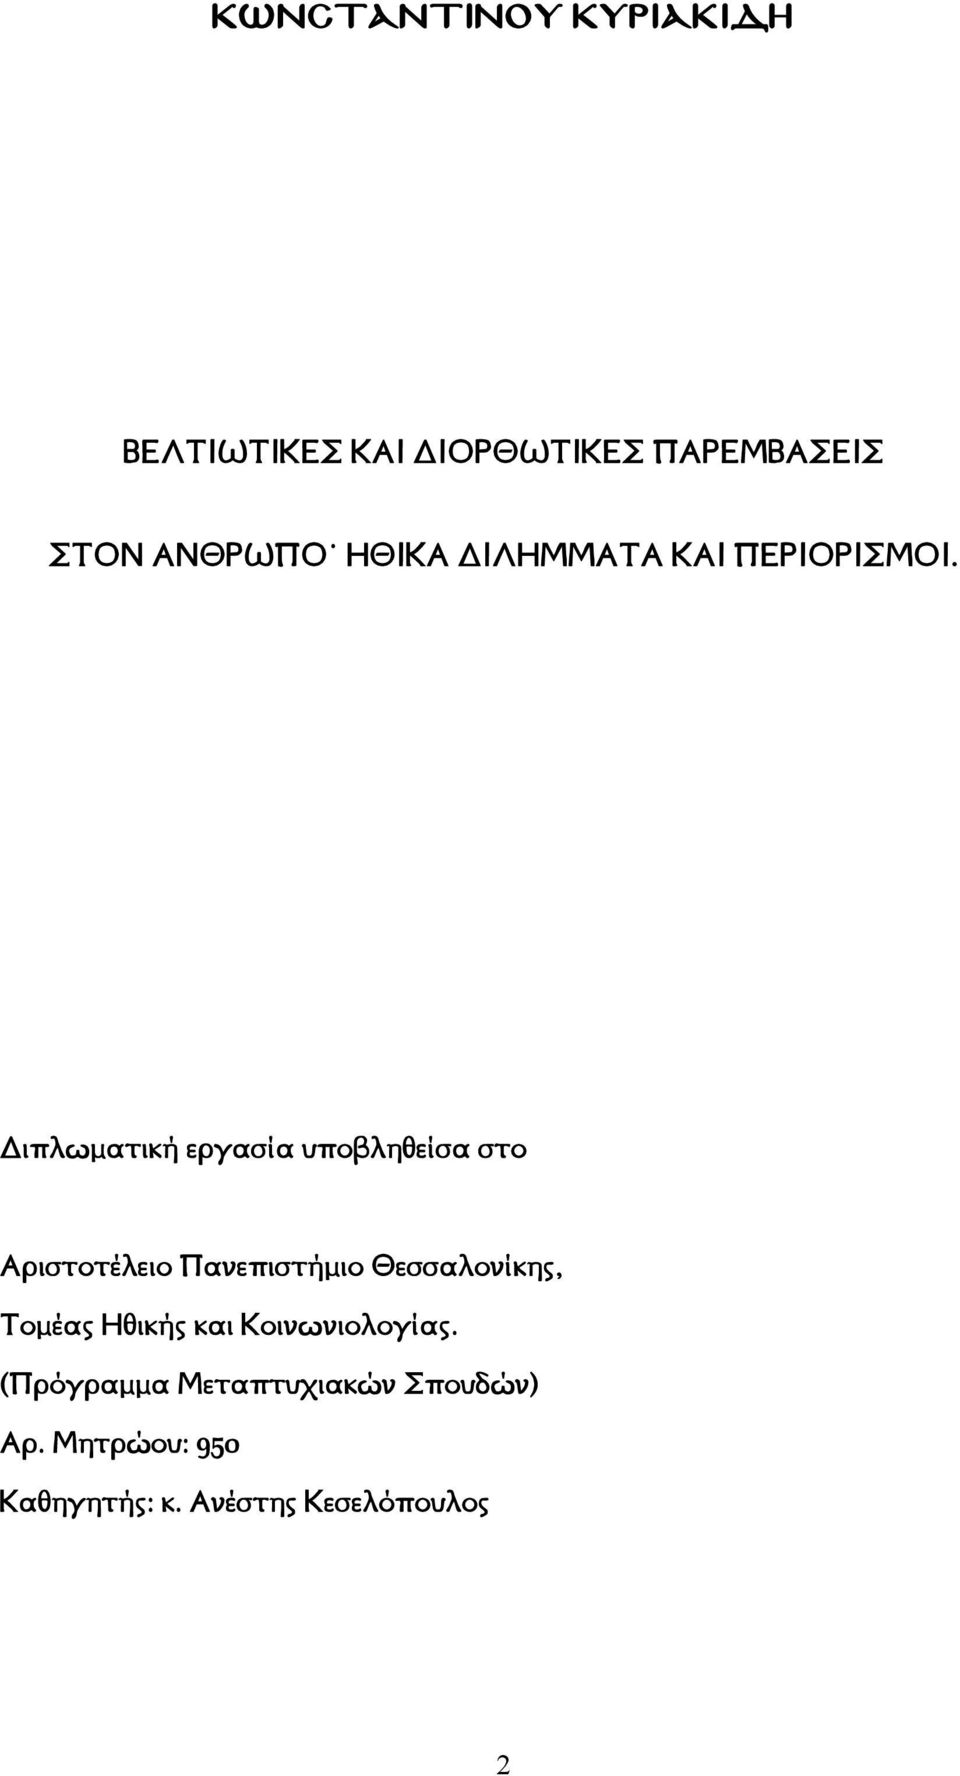 ιπλωματική εργασία υποβληθείσα στο Αριστοτέλειο Πανεπιστήμιο Θεσσαλονίκης,